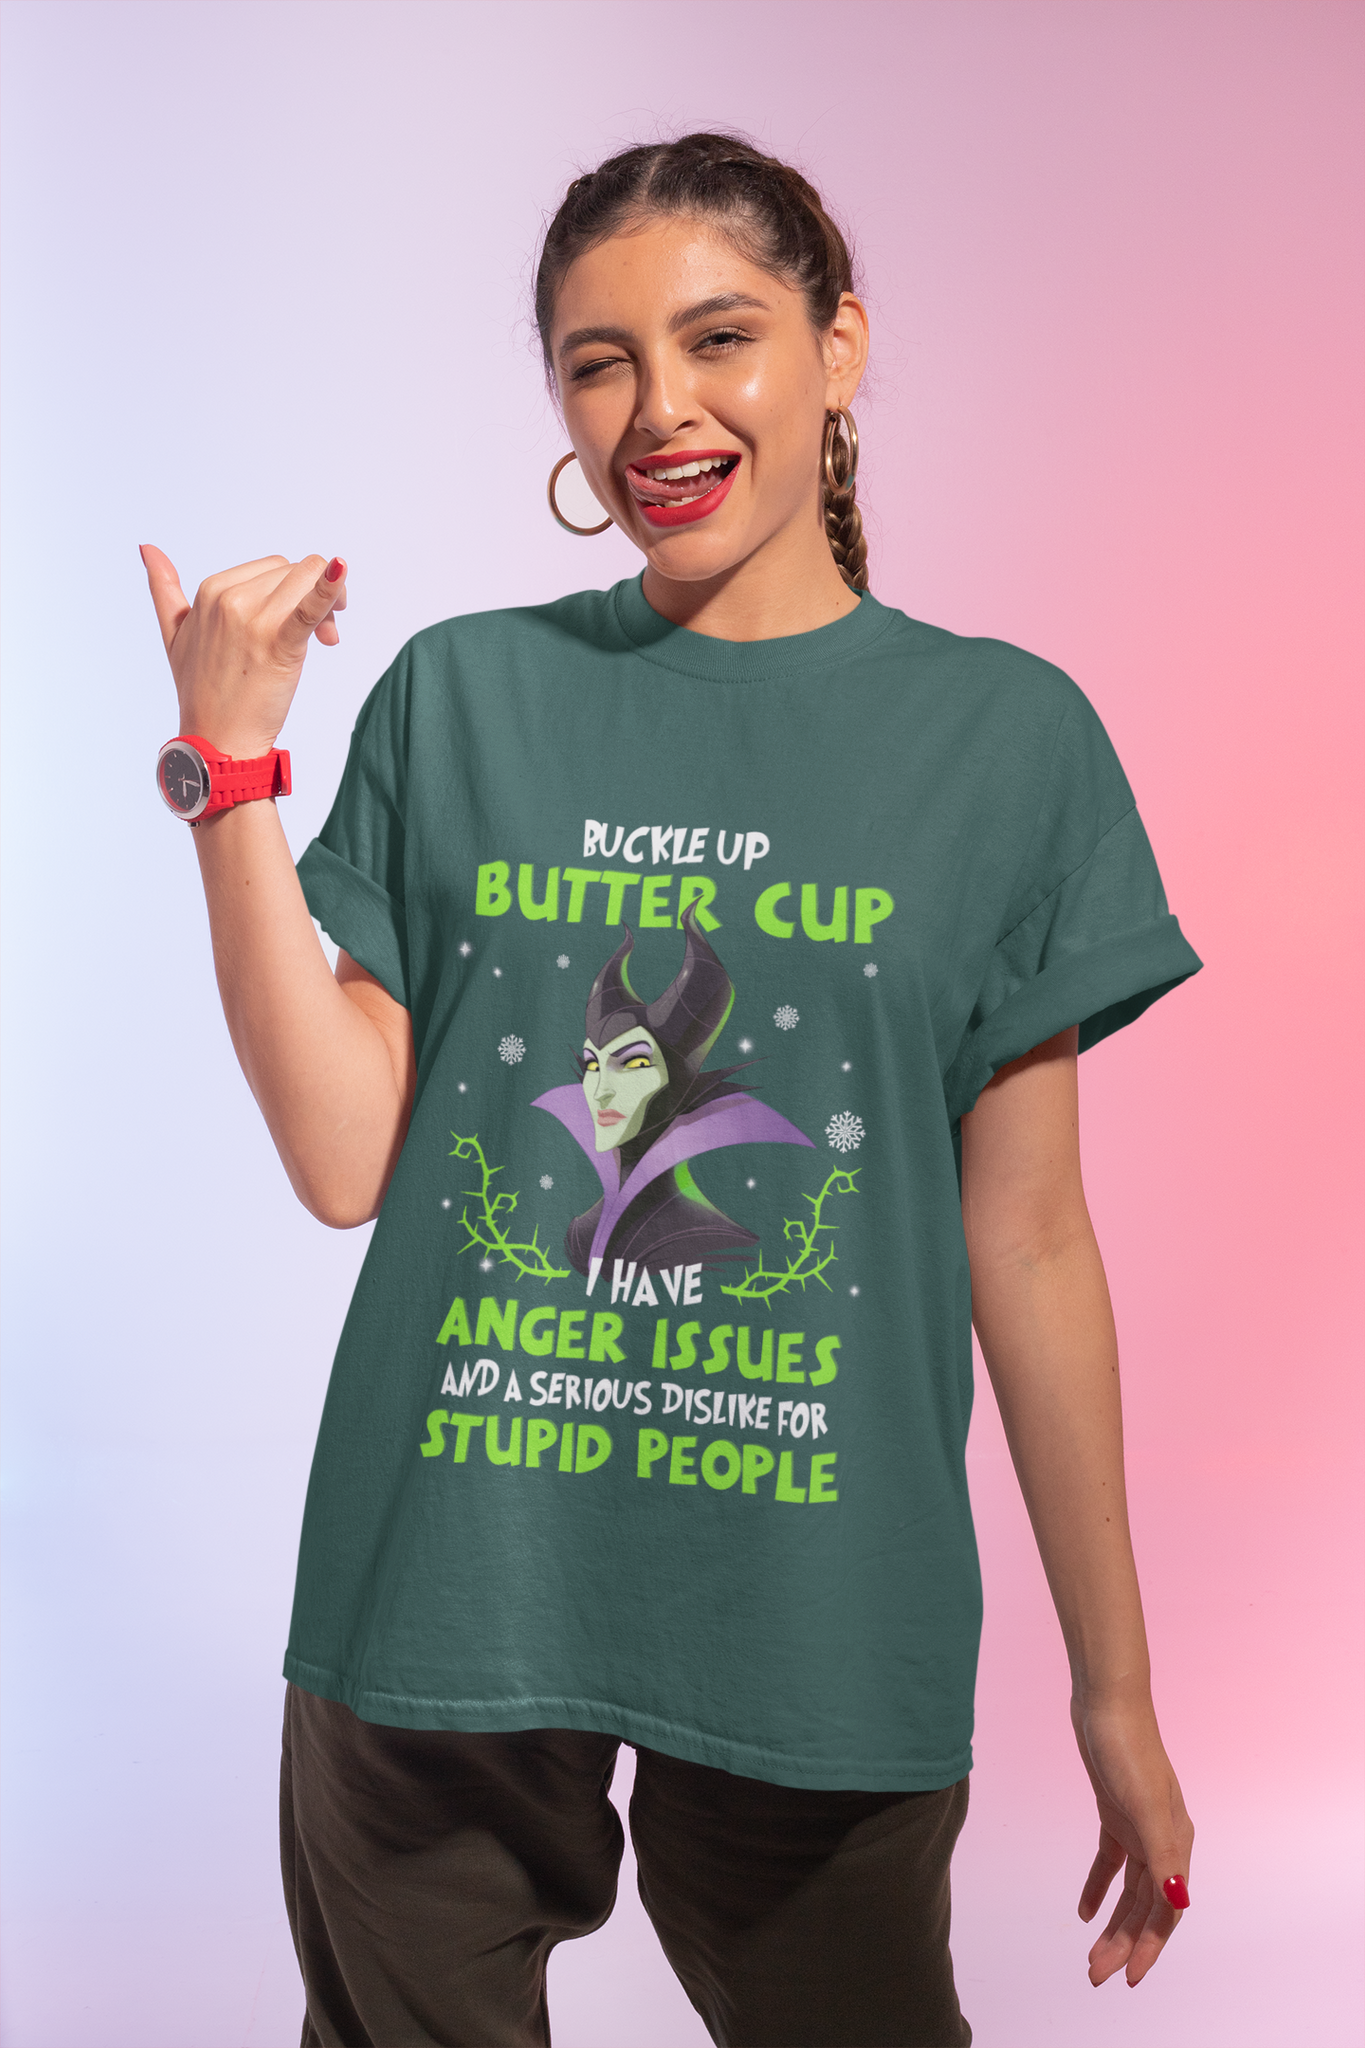 Disney Maleficent T Shirt, Buckle Up Butter Cup Tshirt, Disney Villains Shirt, Christmas Gifts